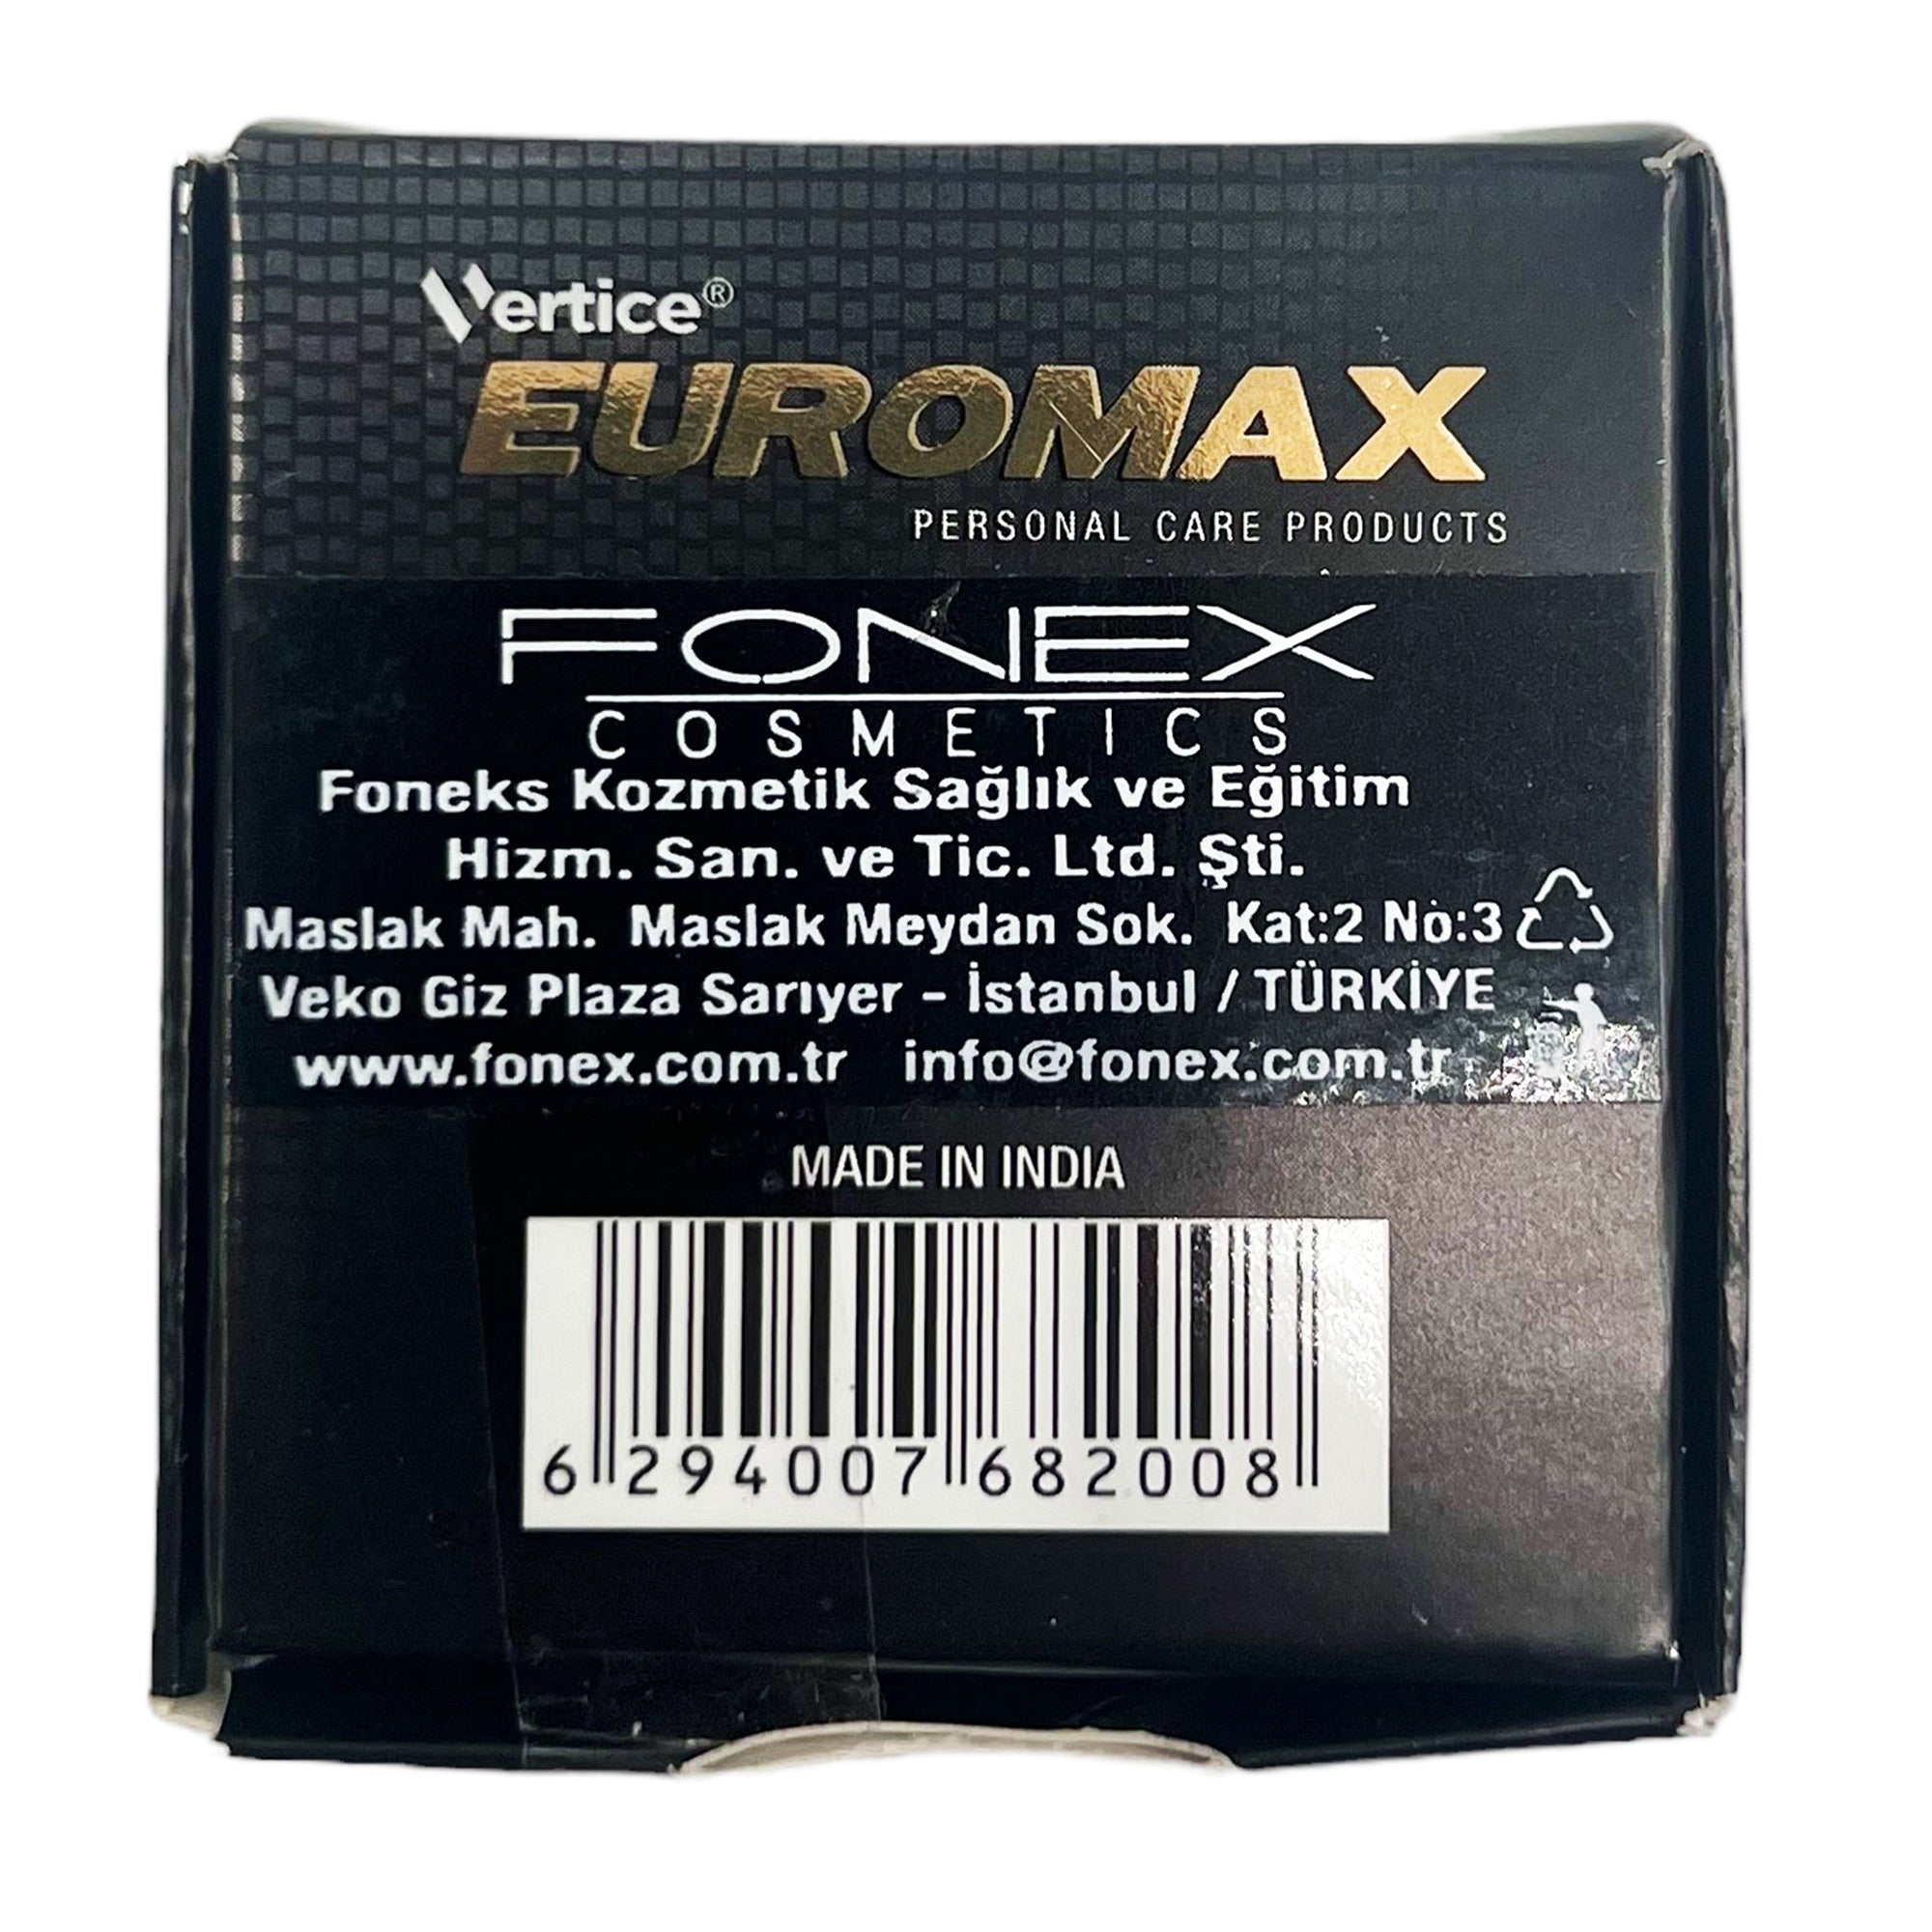 Euromax - Single Edge Razor Blades (100pcs)